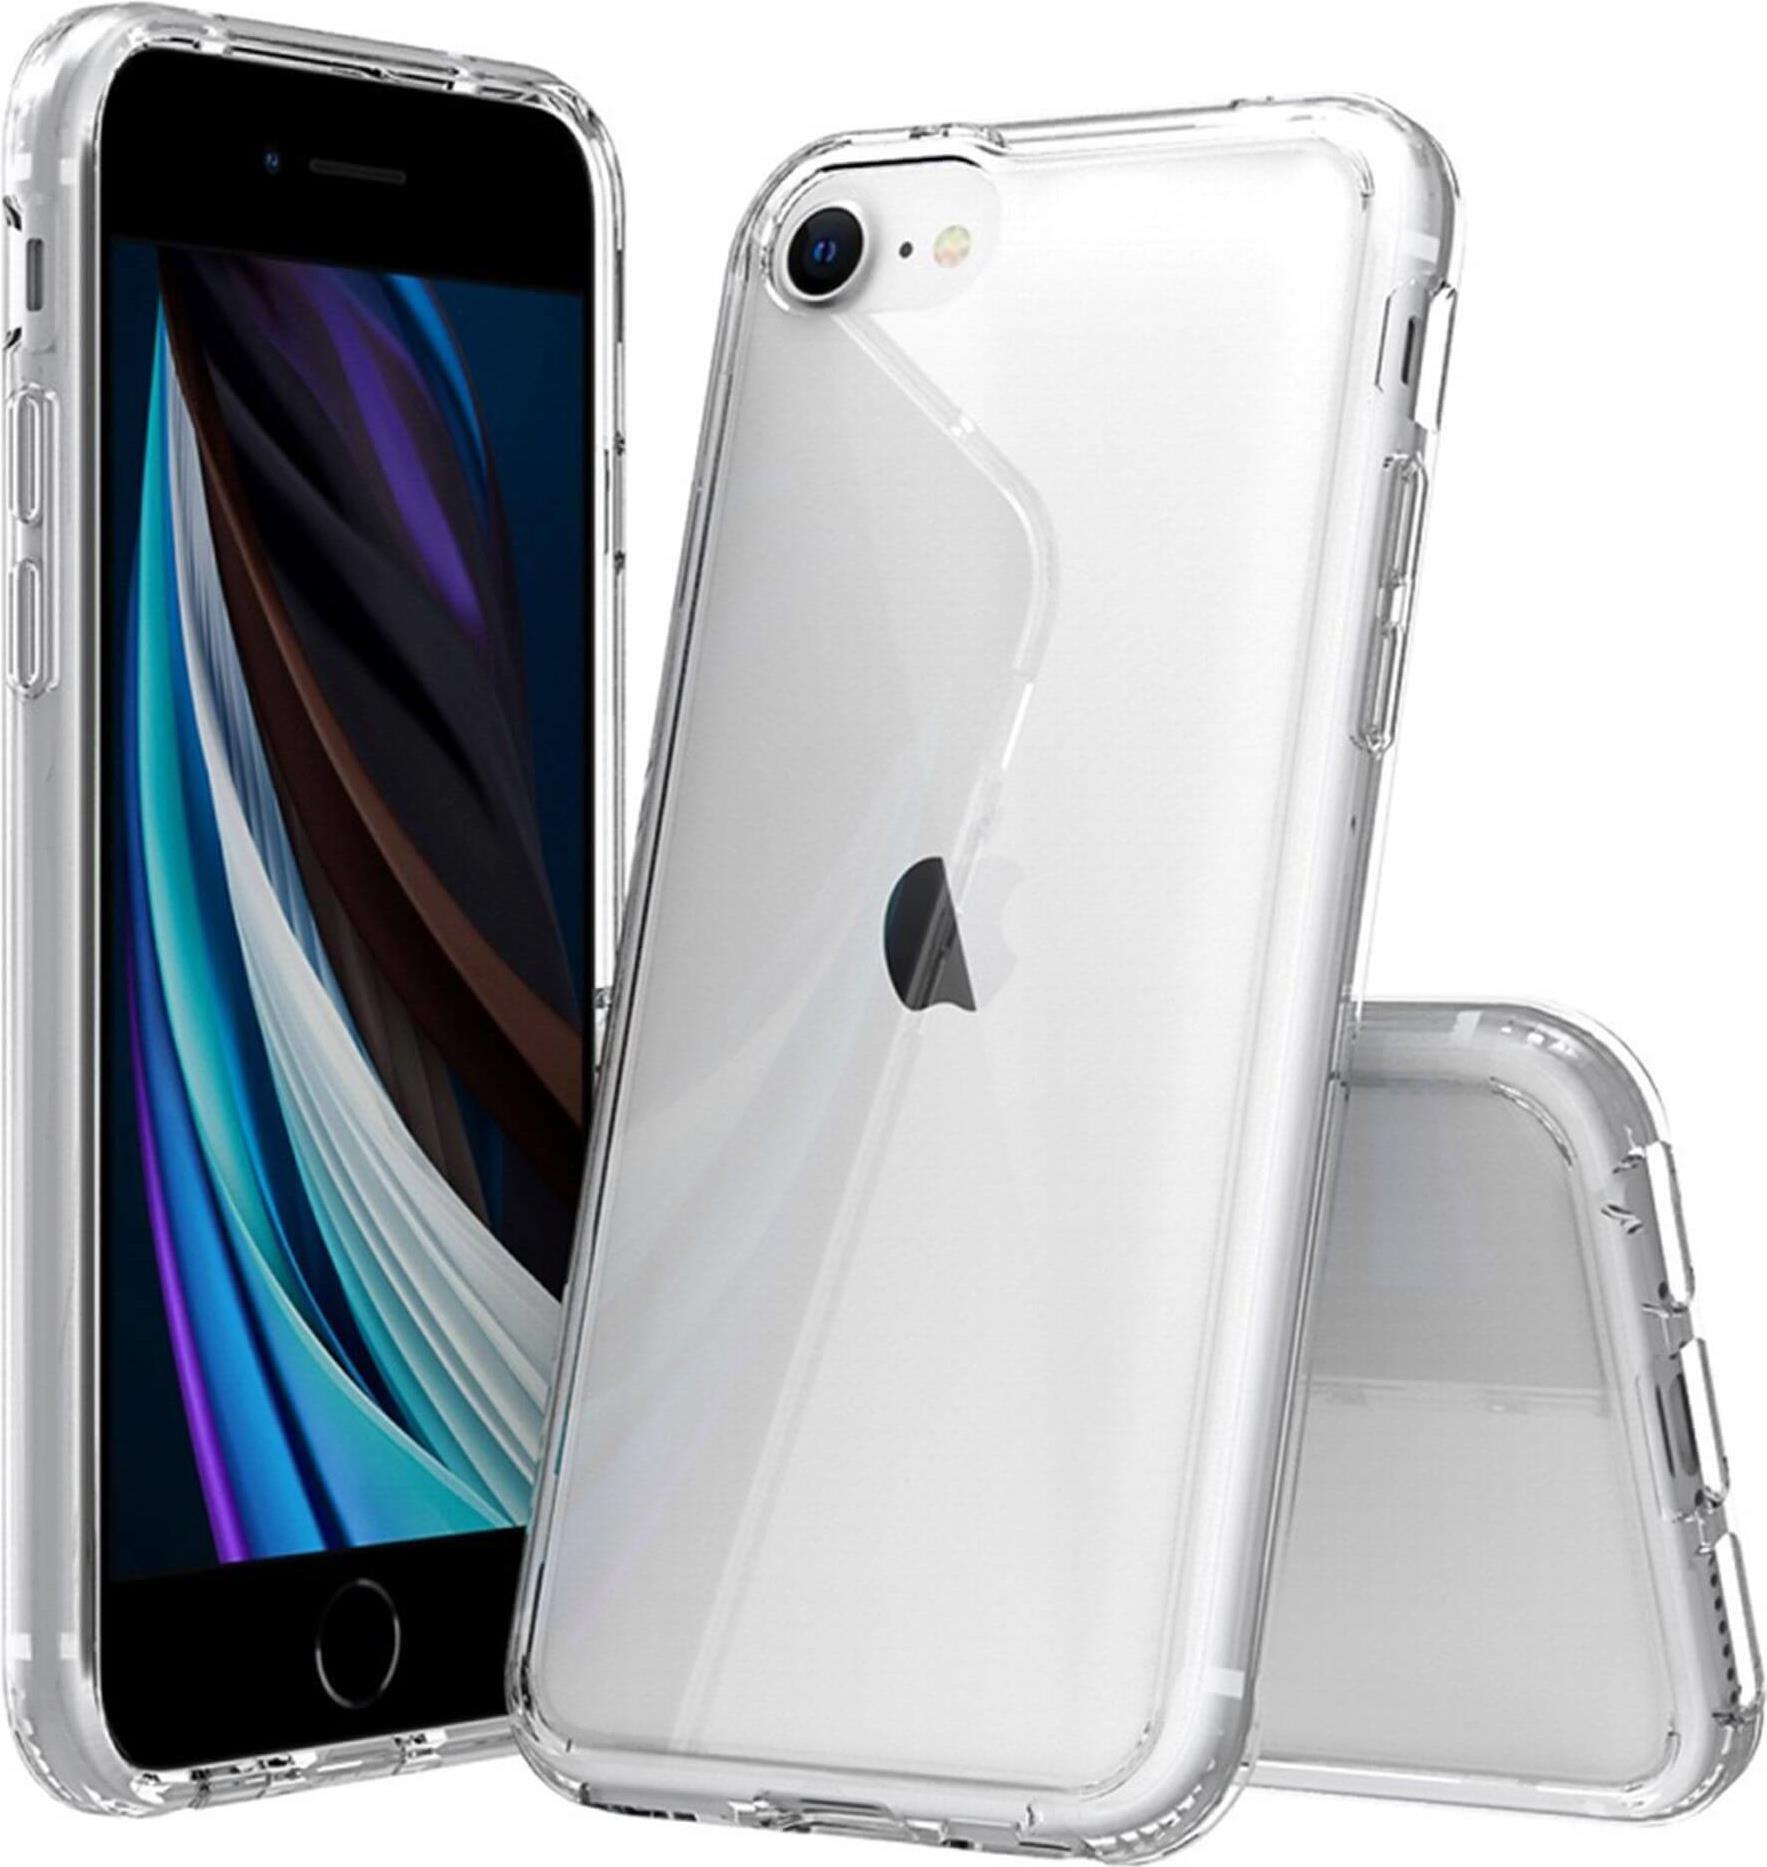 grotop JT BackCase Pankow Clear für iPhone 7/8/SE 2020, Transparent (10694)